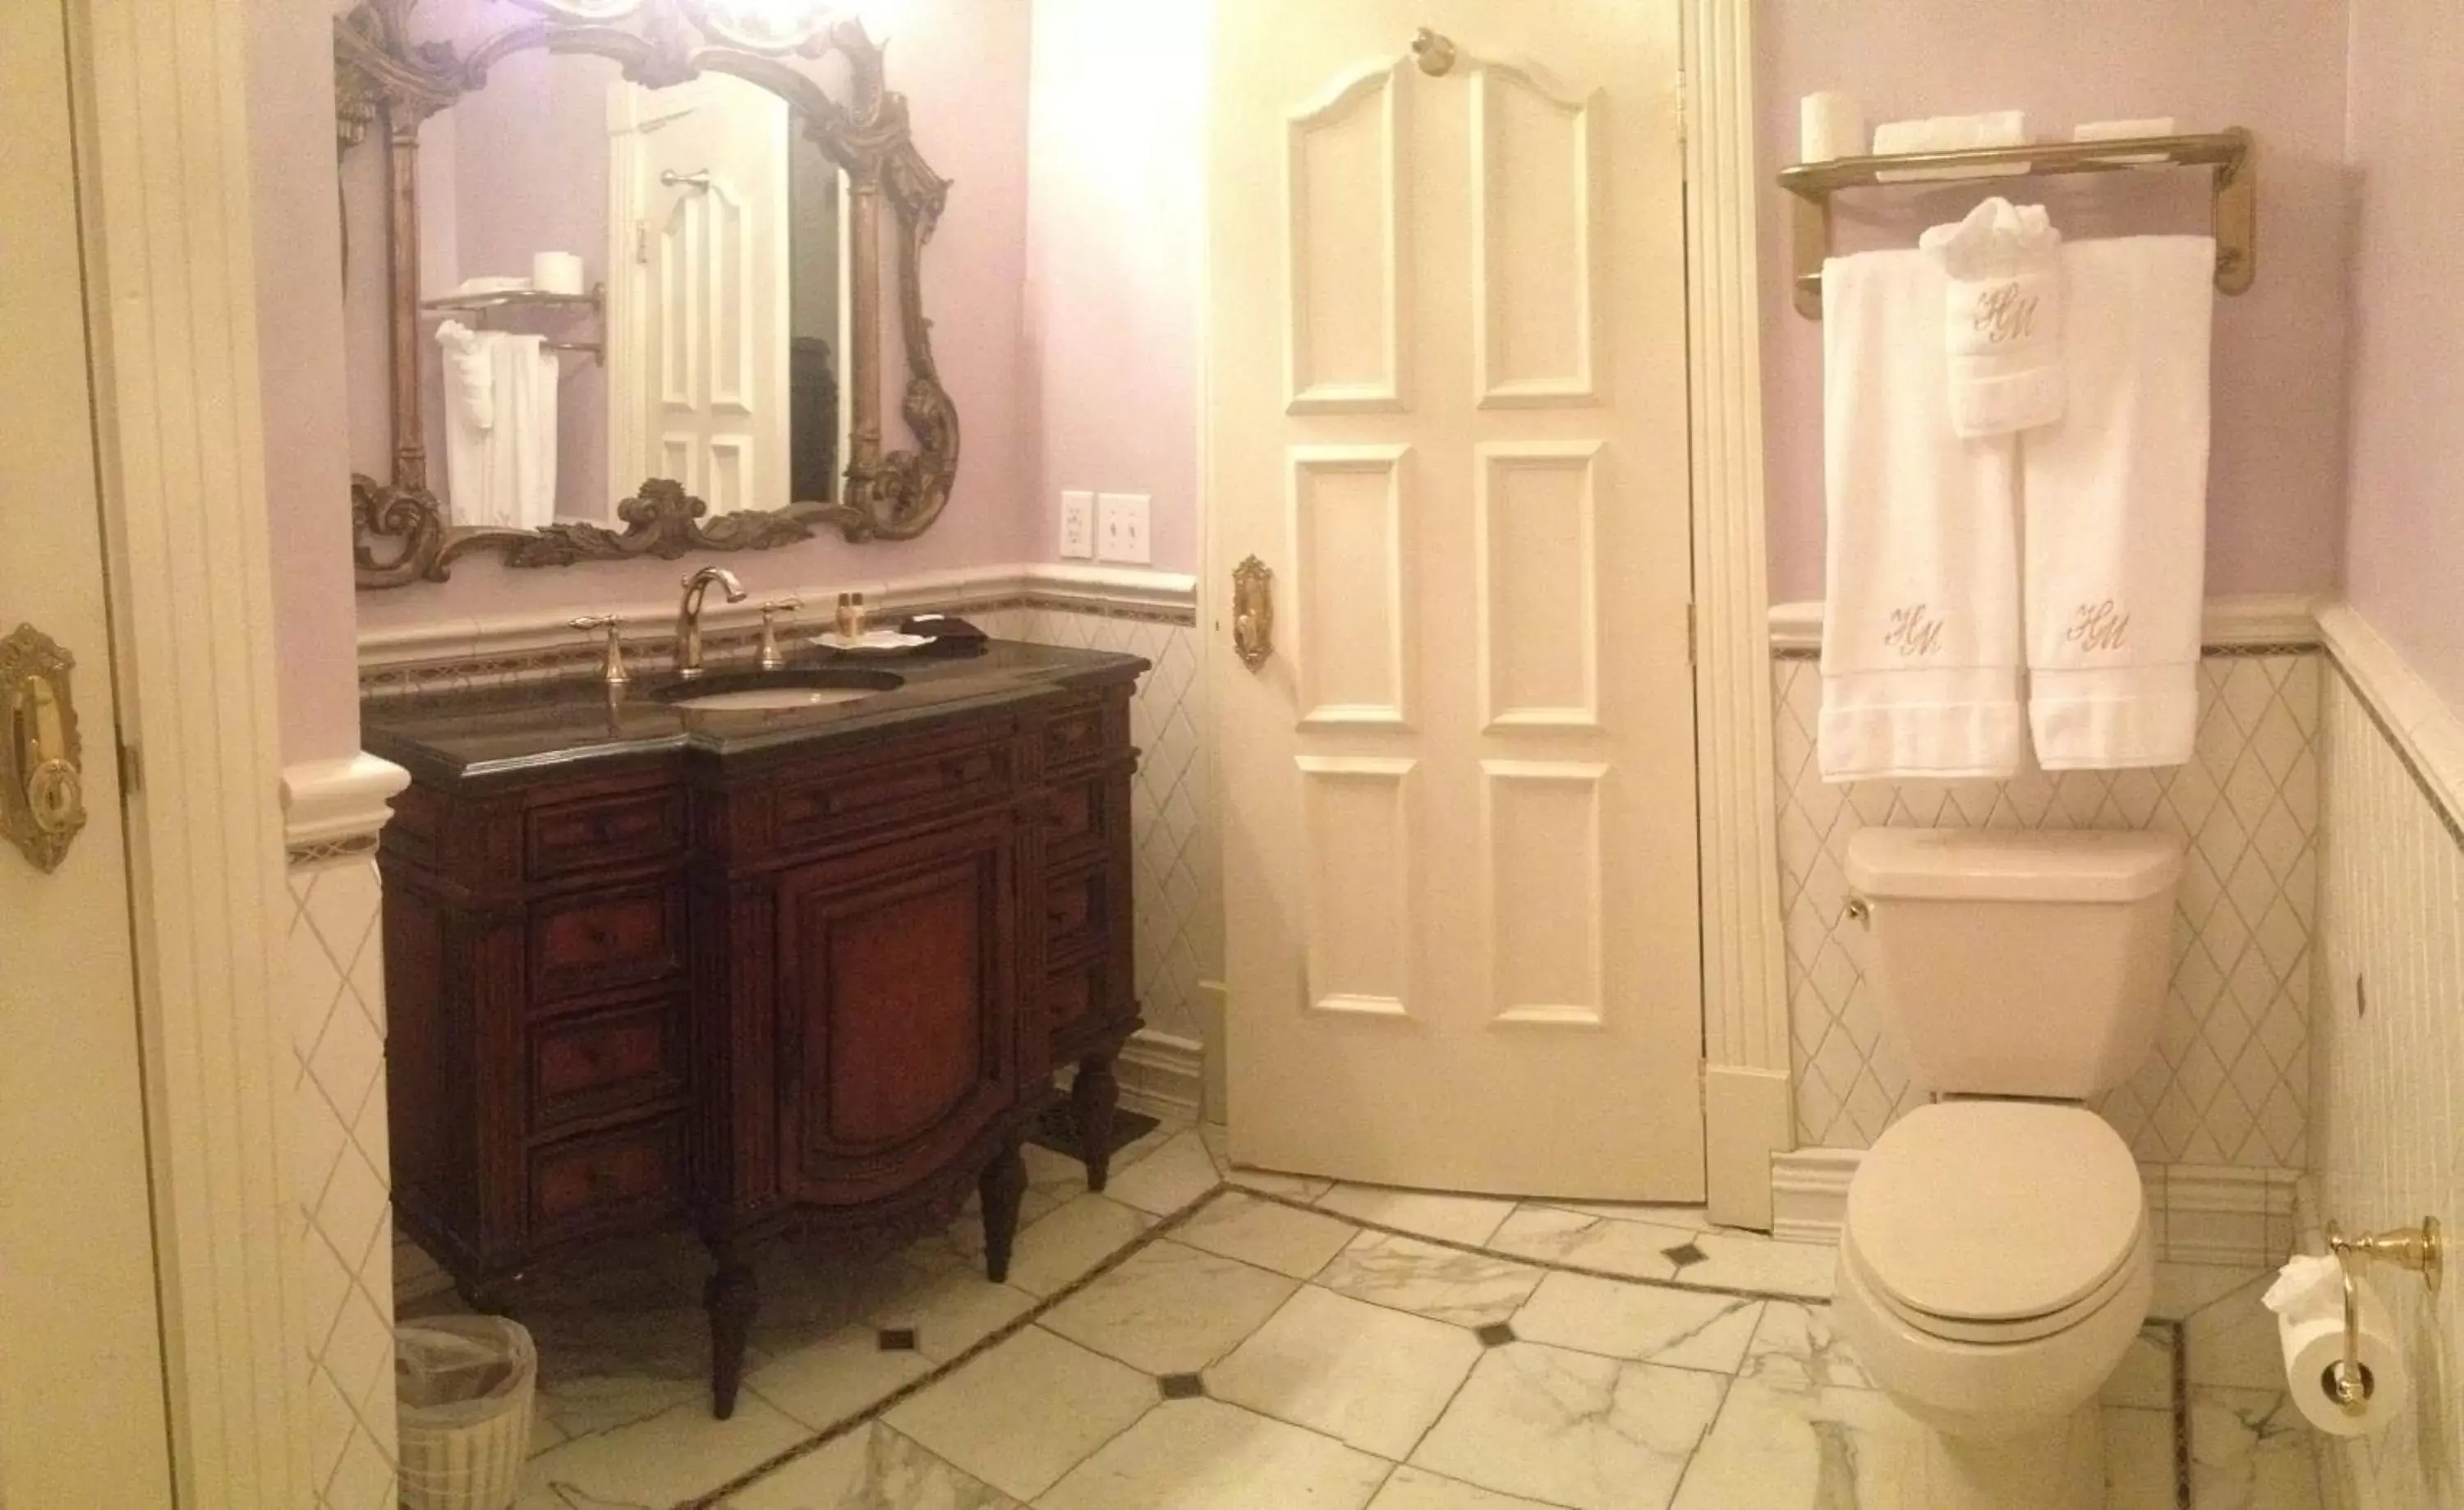 Bedroom, Bathroom in The Hotel Magnolia